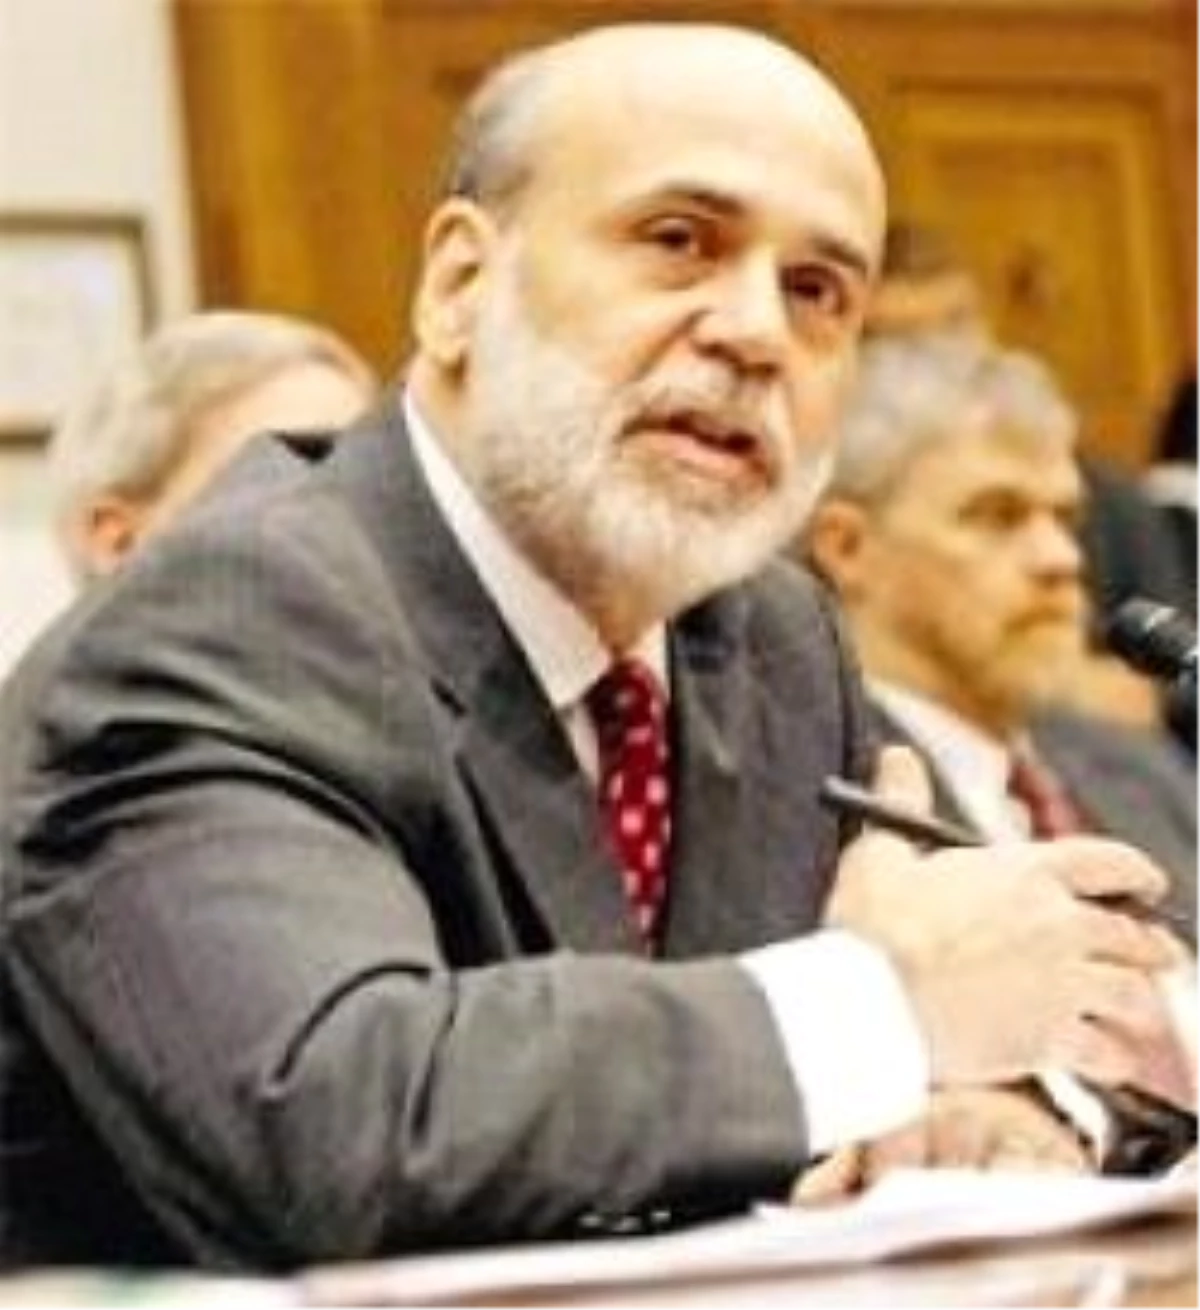 "Bernanke Zor Zamanlarda Doğru Kararlar Aldı"